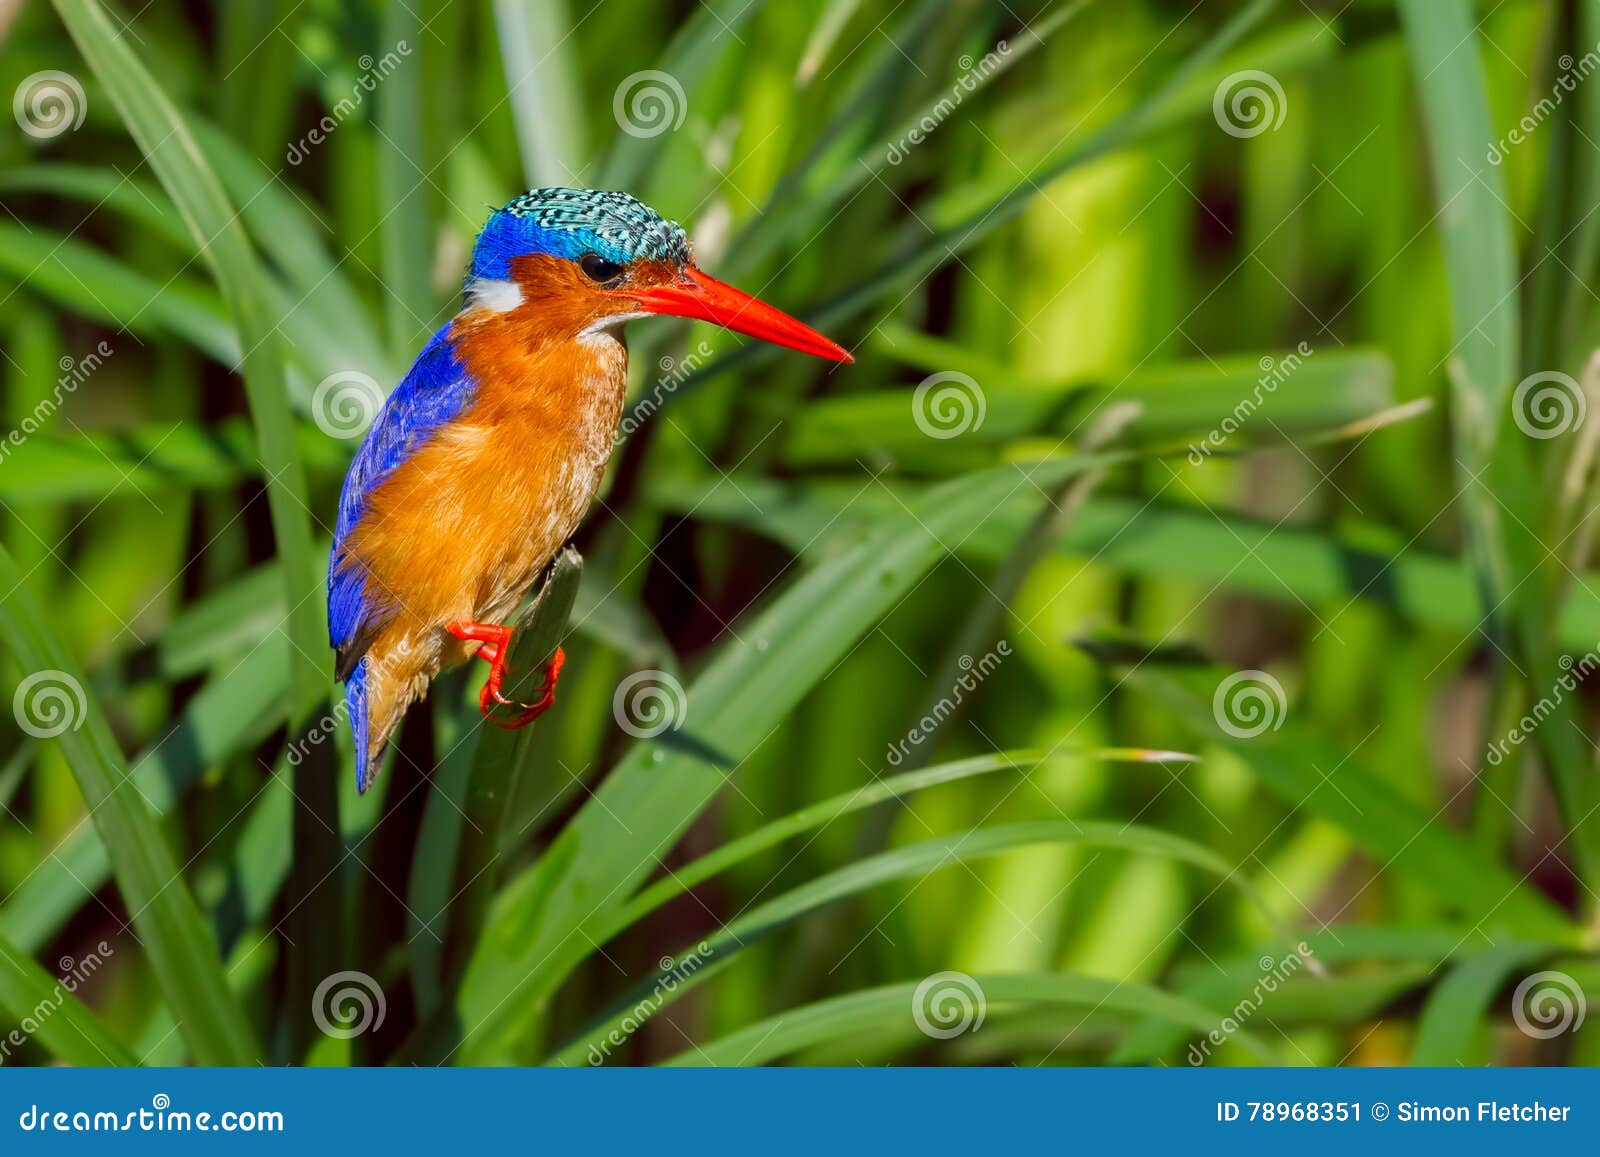 malachite kingfisher perched amongst reeds